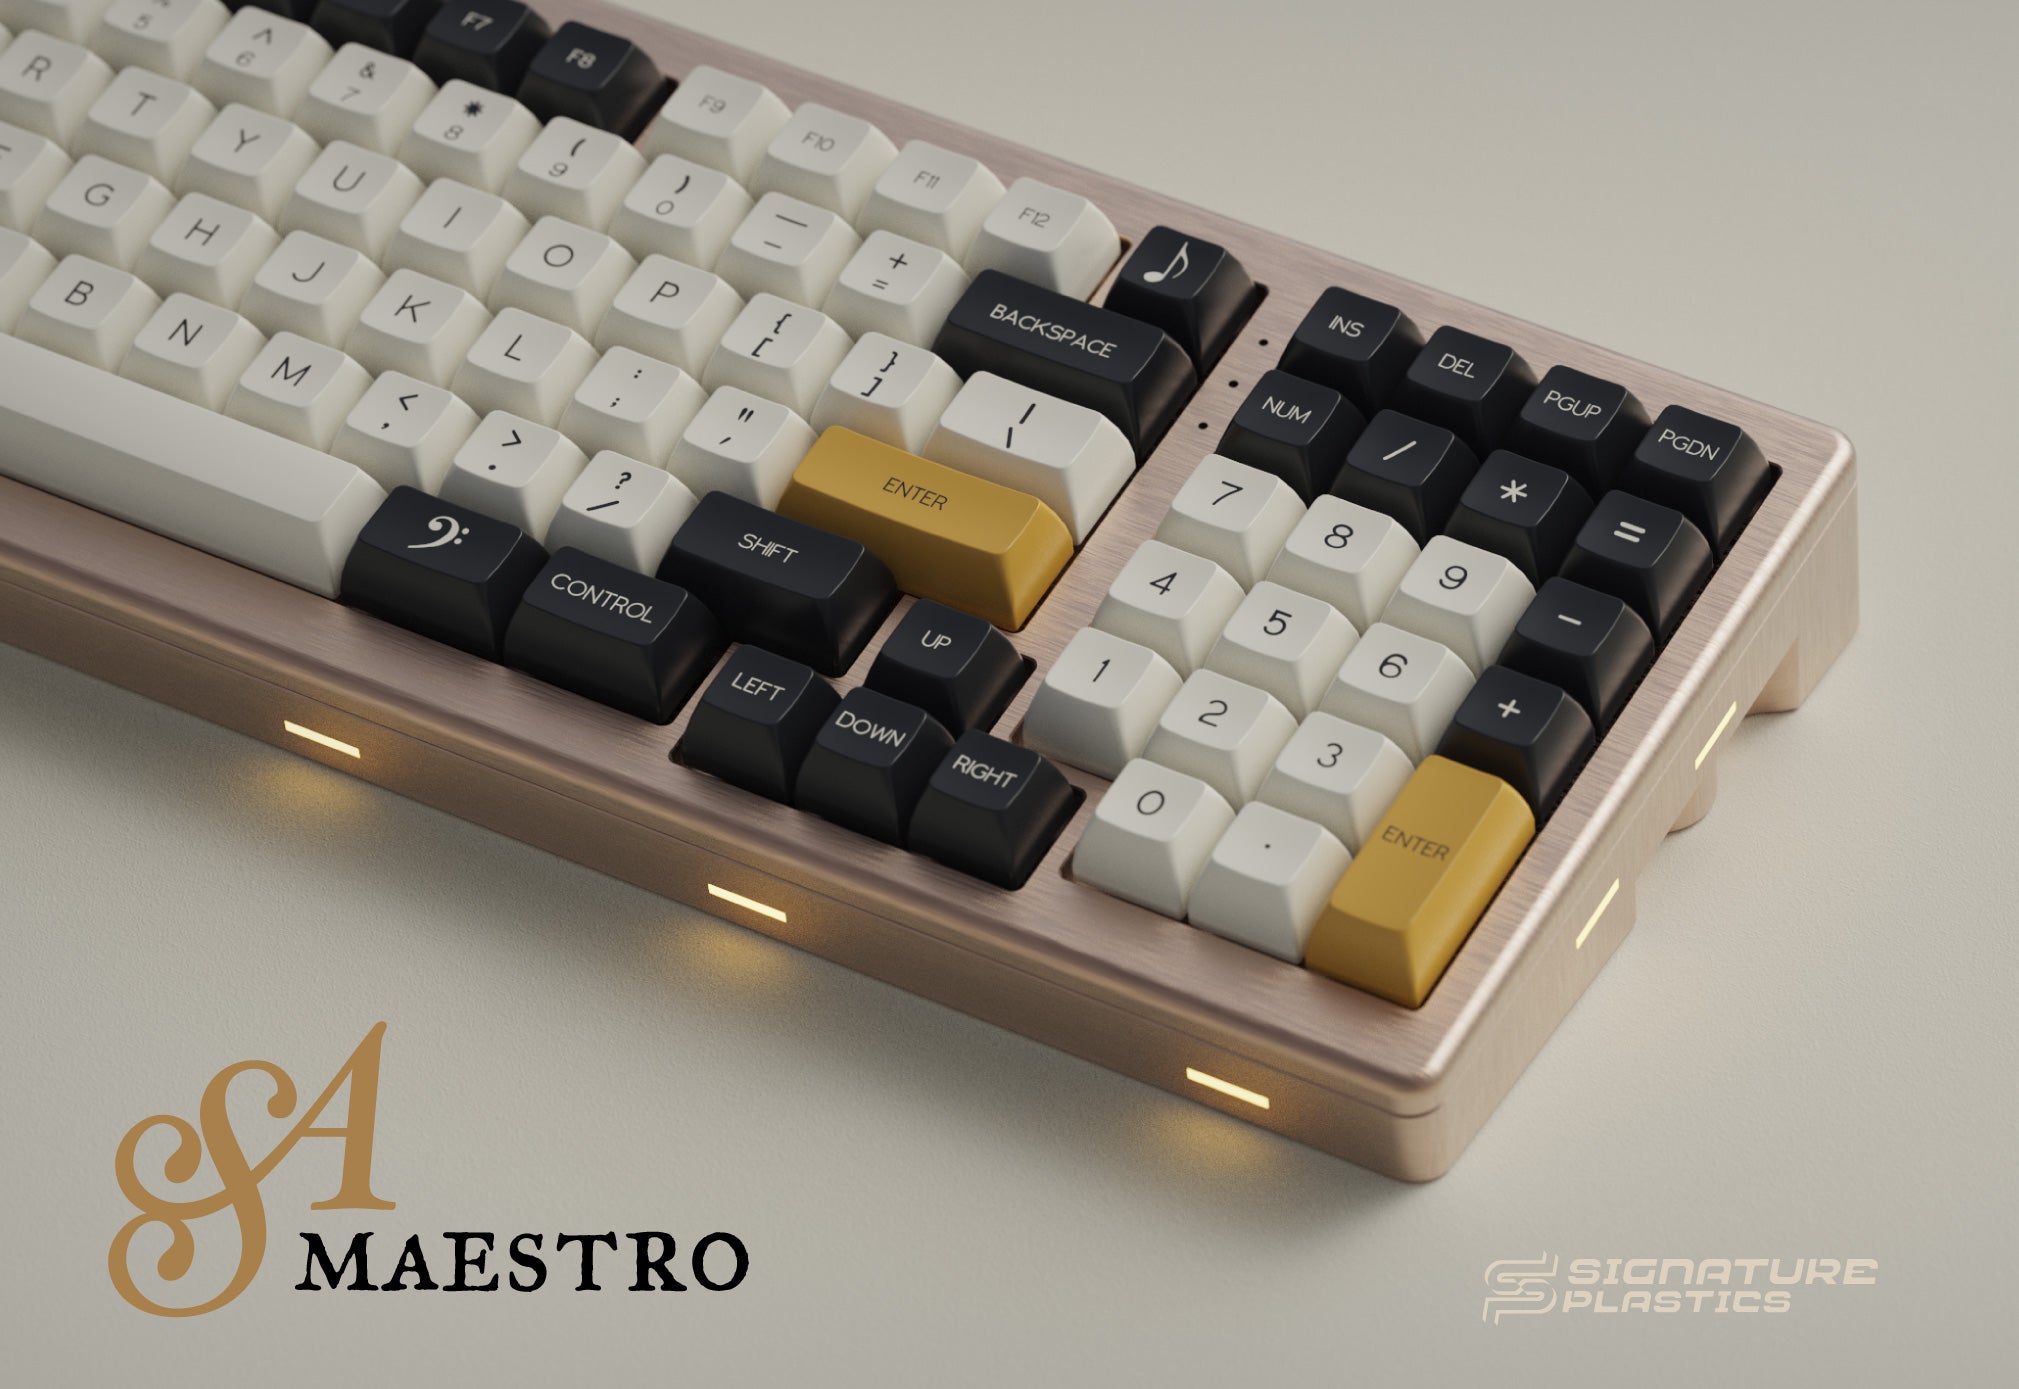 [Group buy] SP SA Maestro-zFrontier